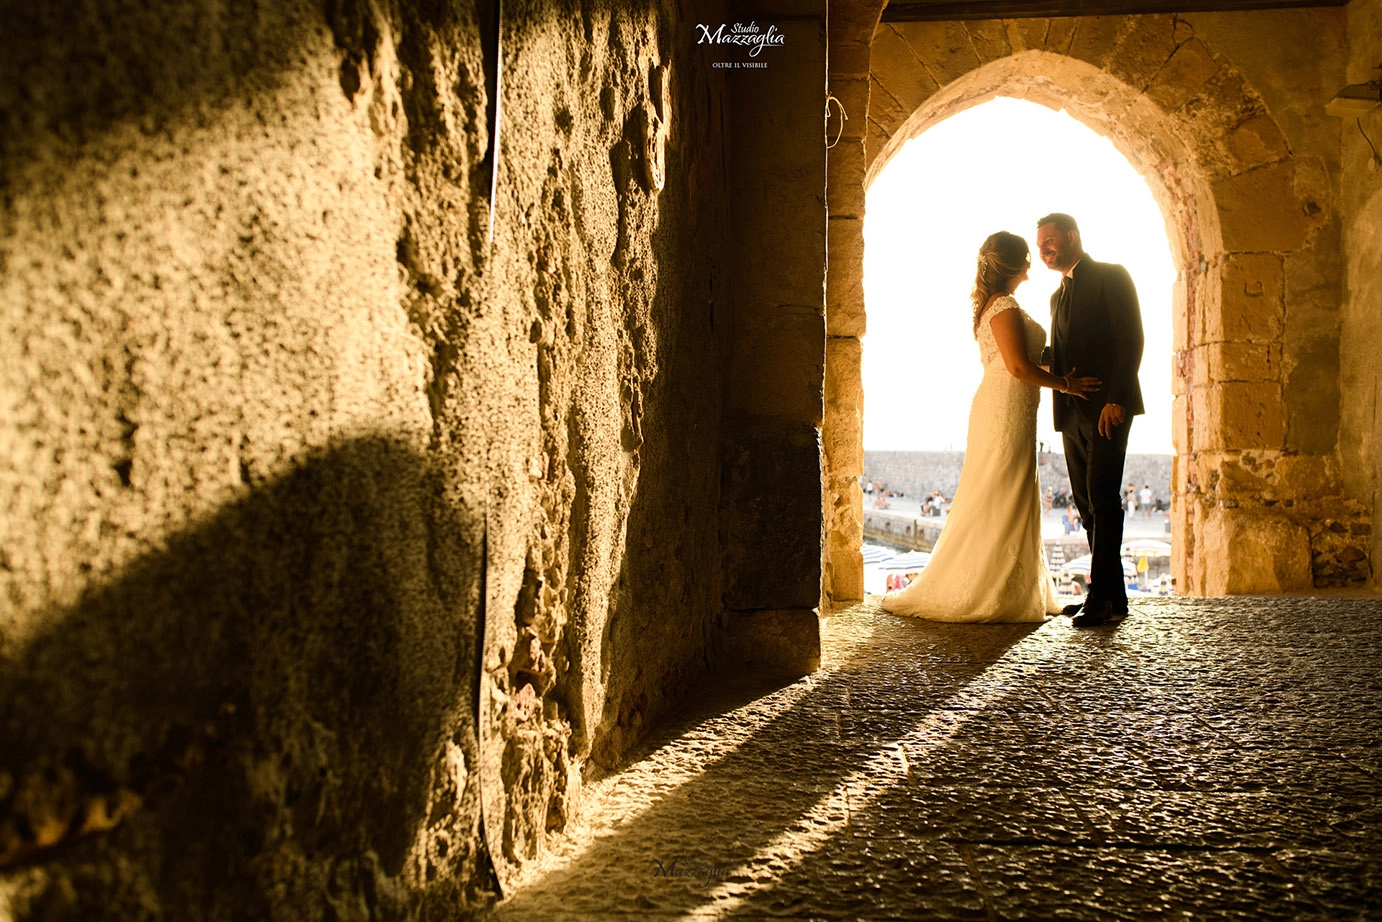 Fotografo matrimonio italia cefalù mazzaglia carmelo